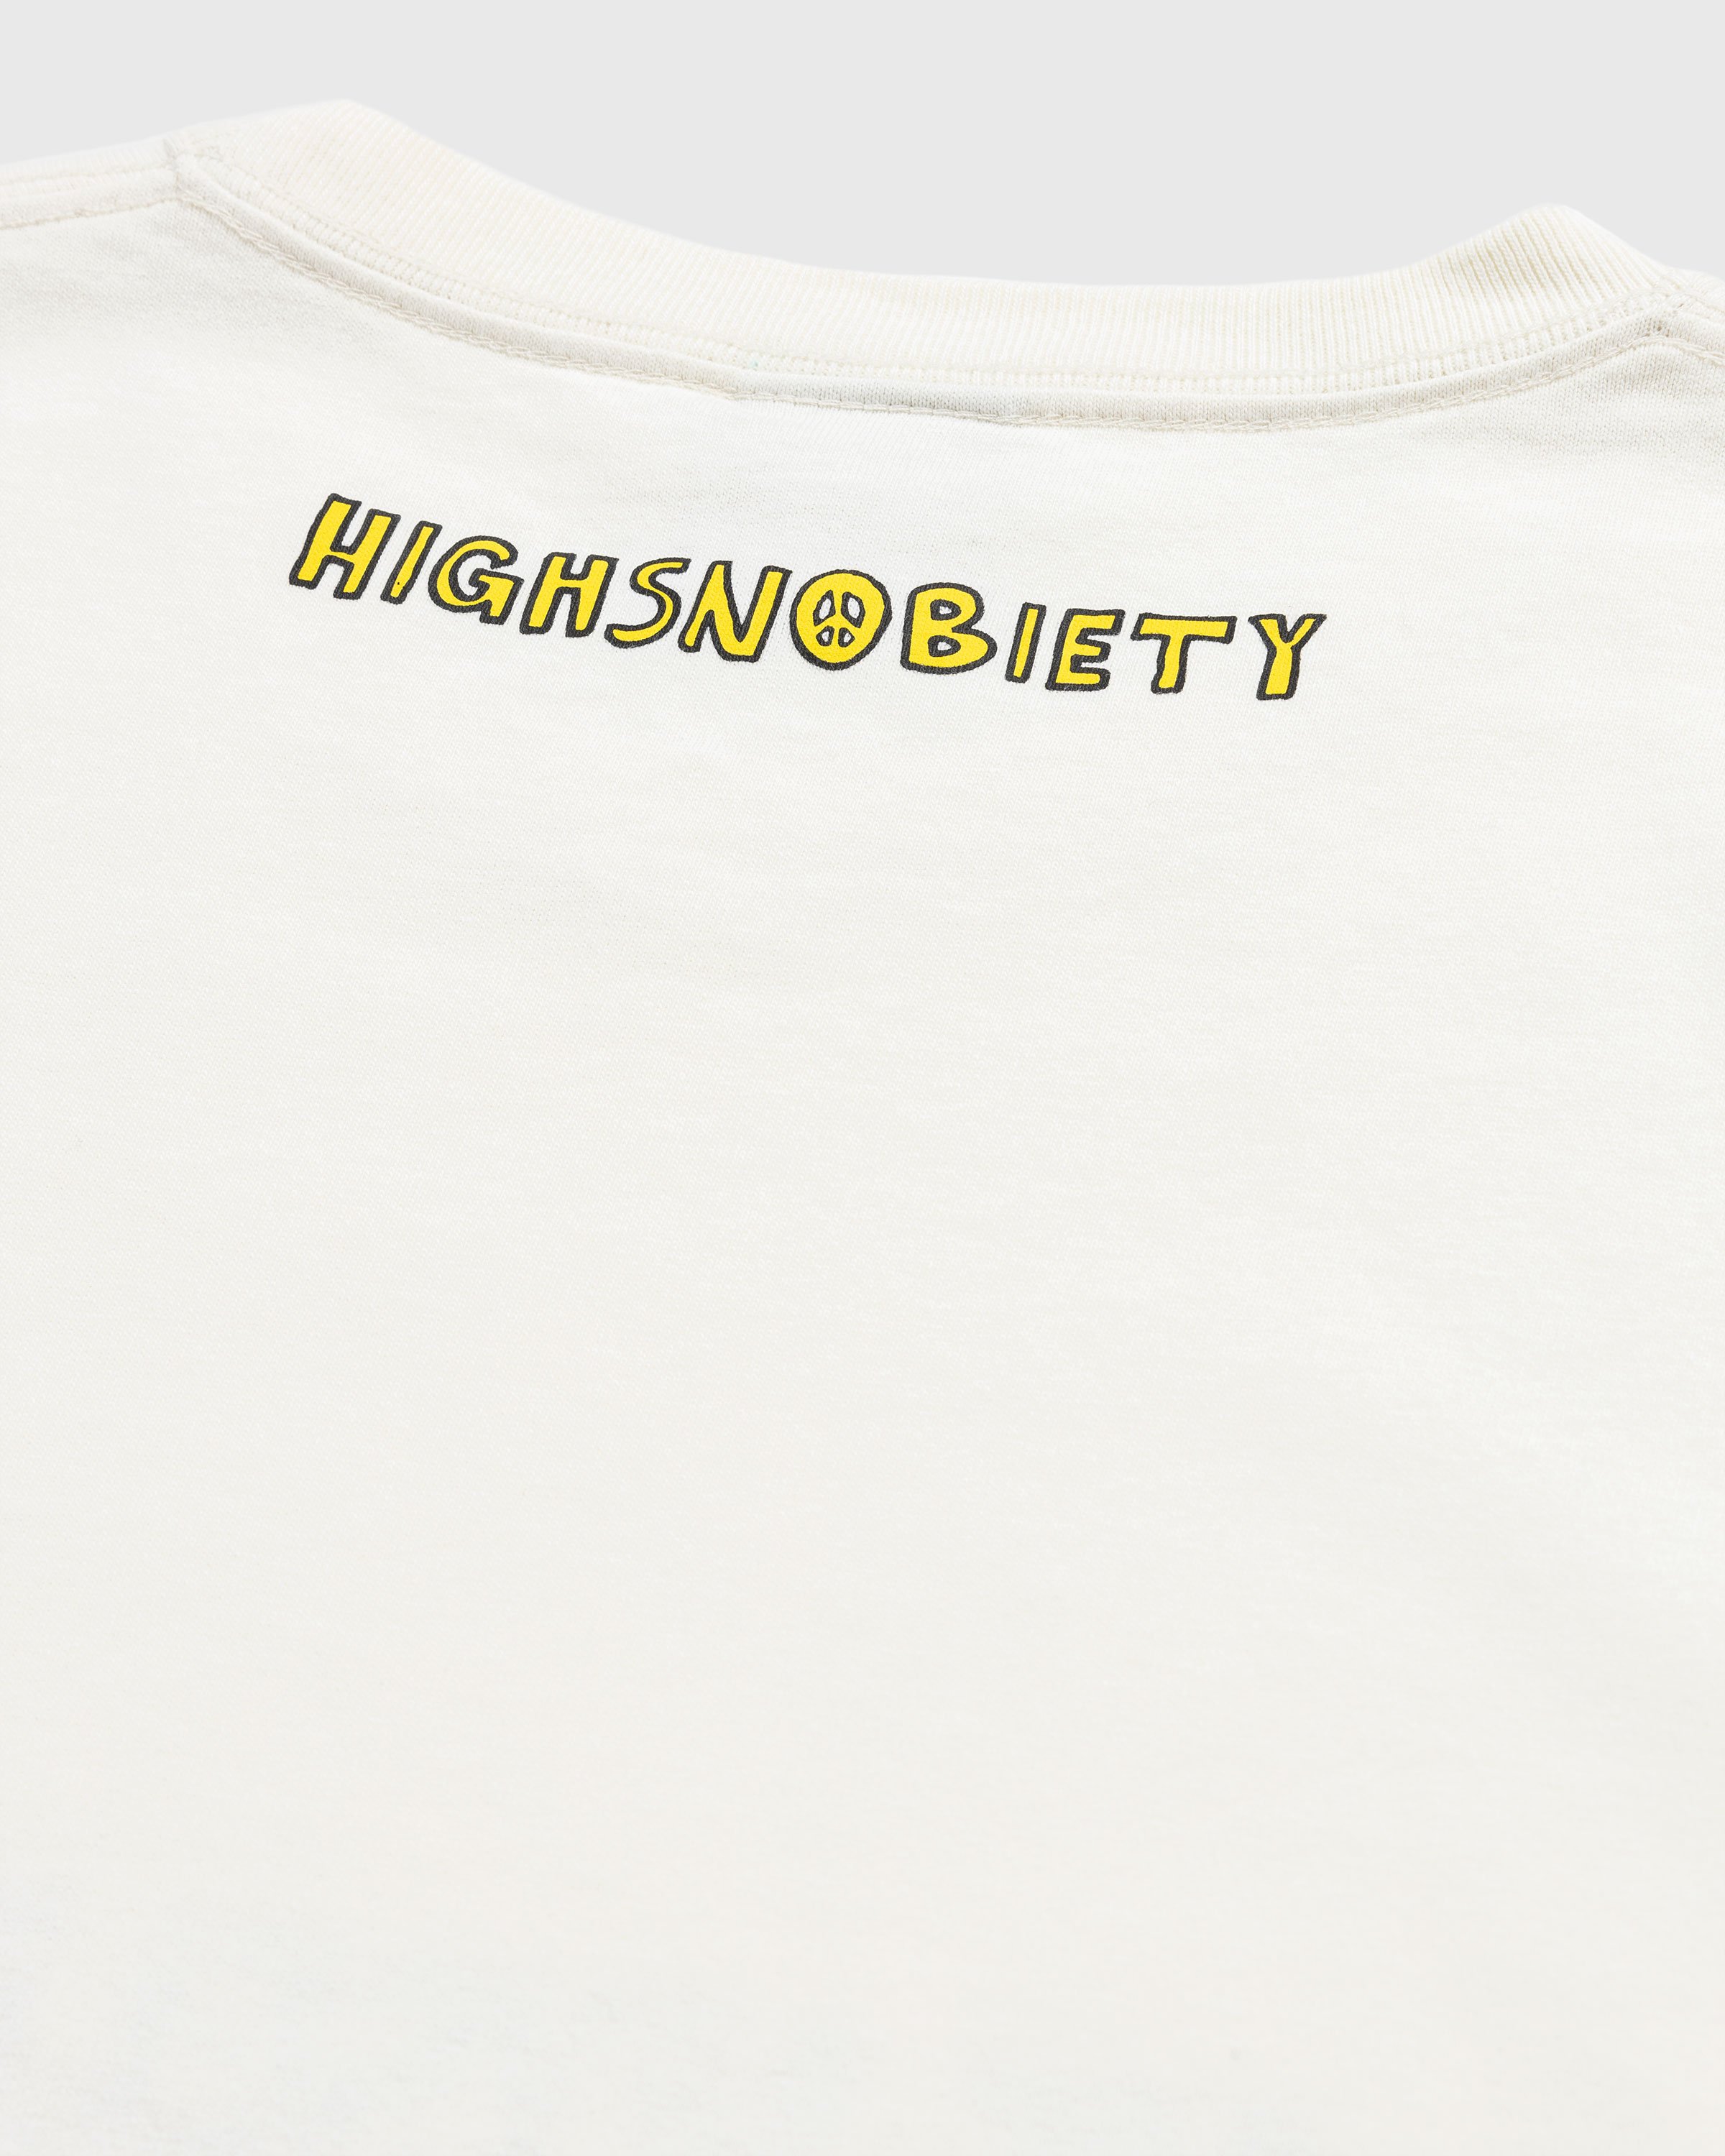 Highsnobiety x De La Soul - Off White T-Shirt - Clothing - Beige - Image 7